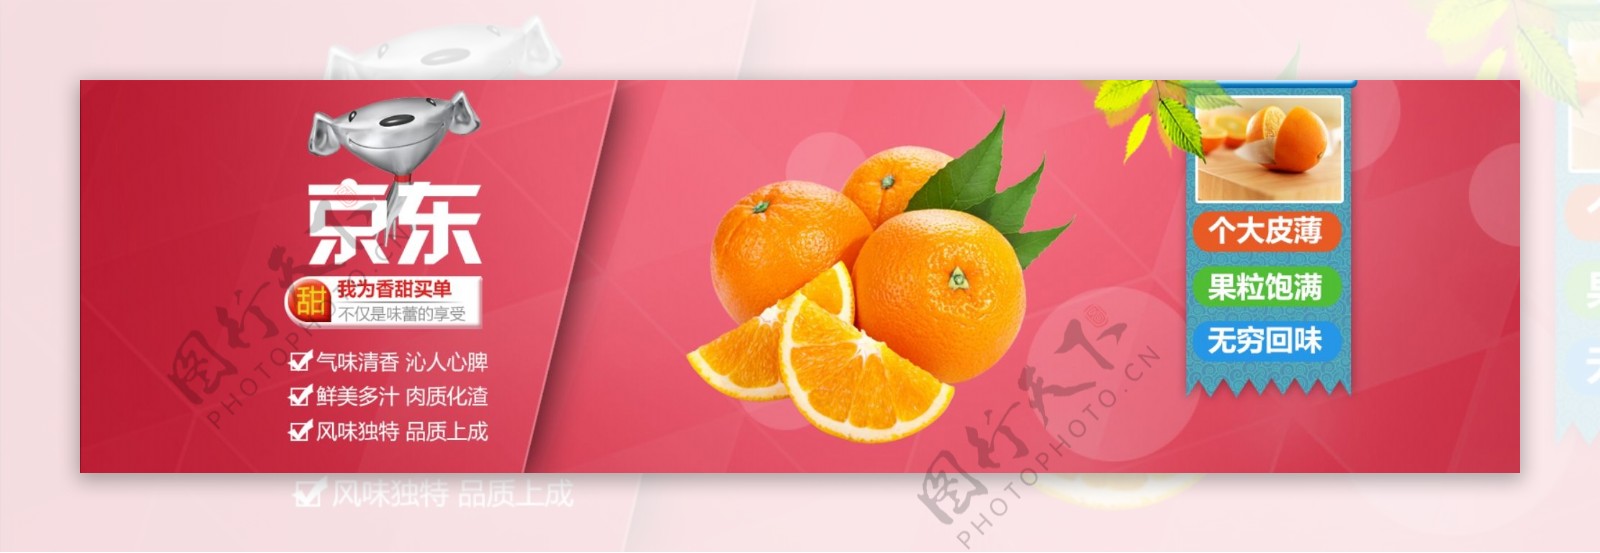 京东橙子活动海报